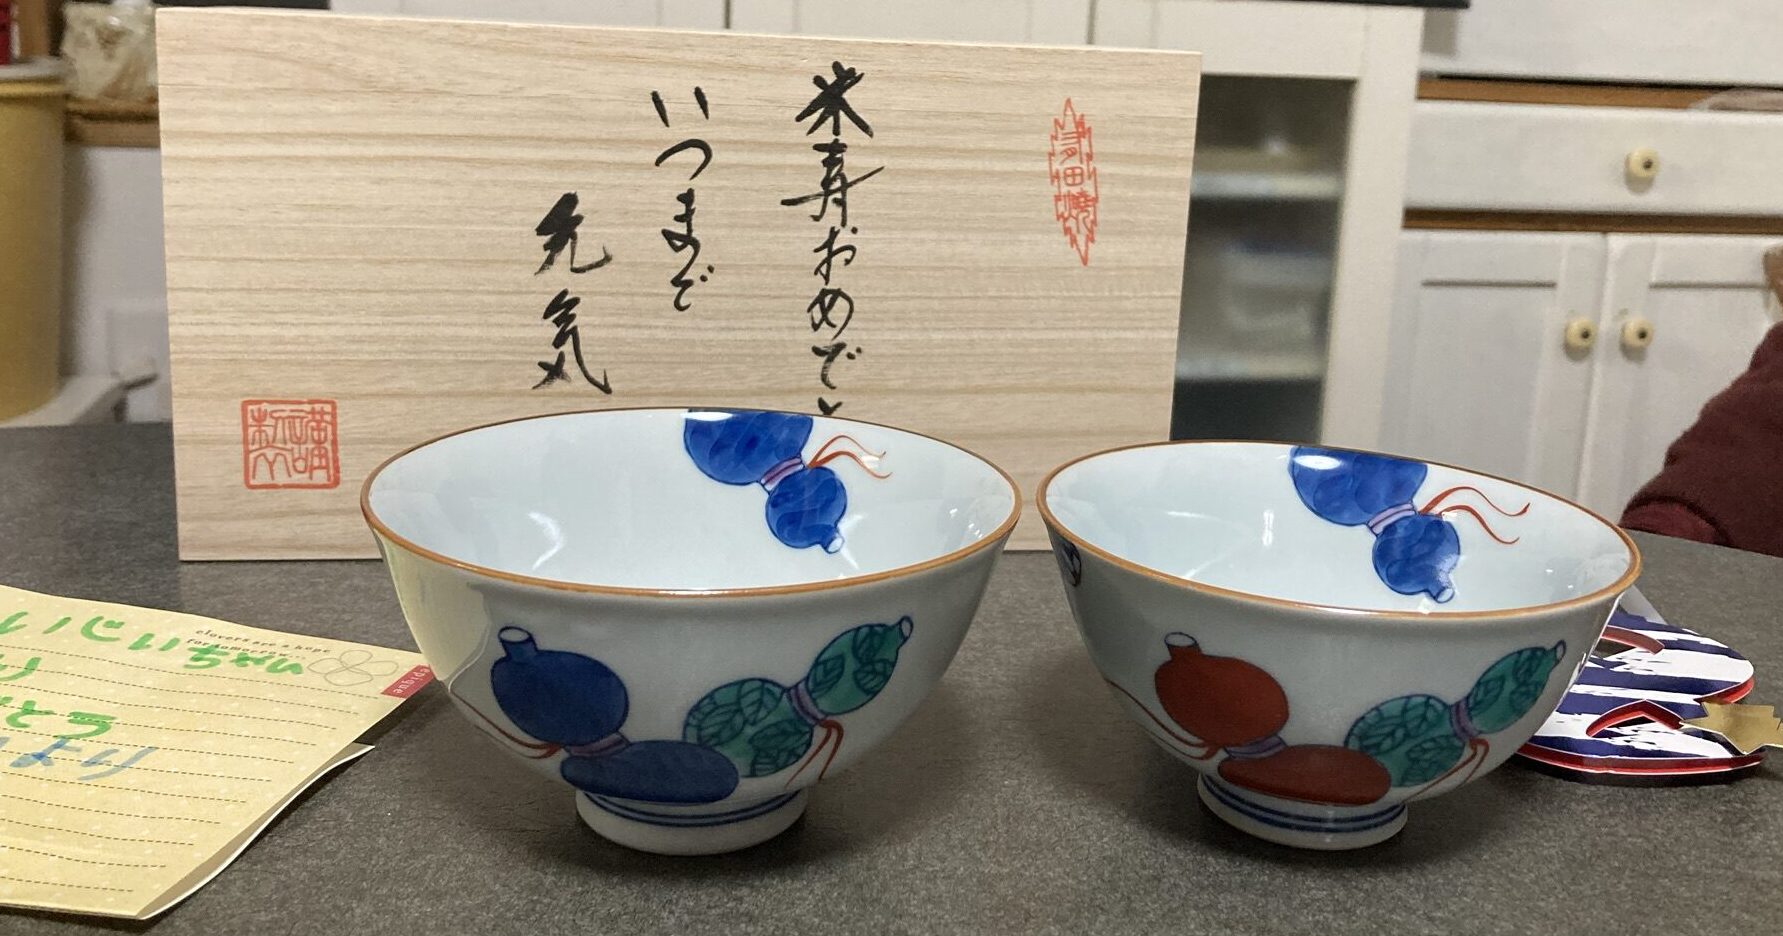 米寿のお祝いに孫からプレゼント 夫婦茶碗を贈りました